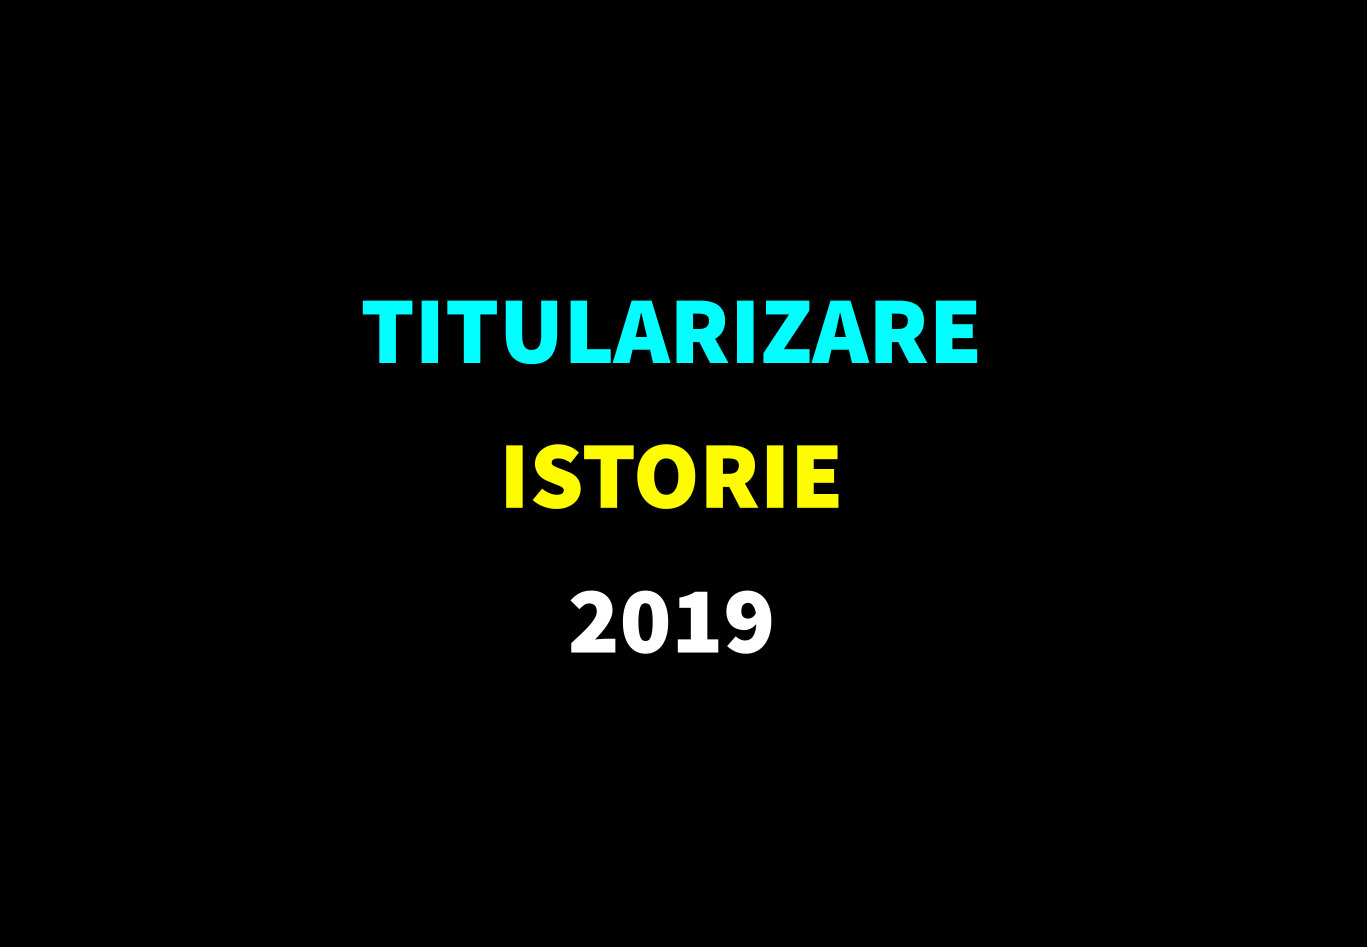 Titularizare istorie 2019